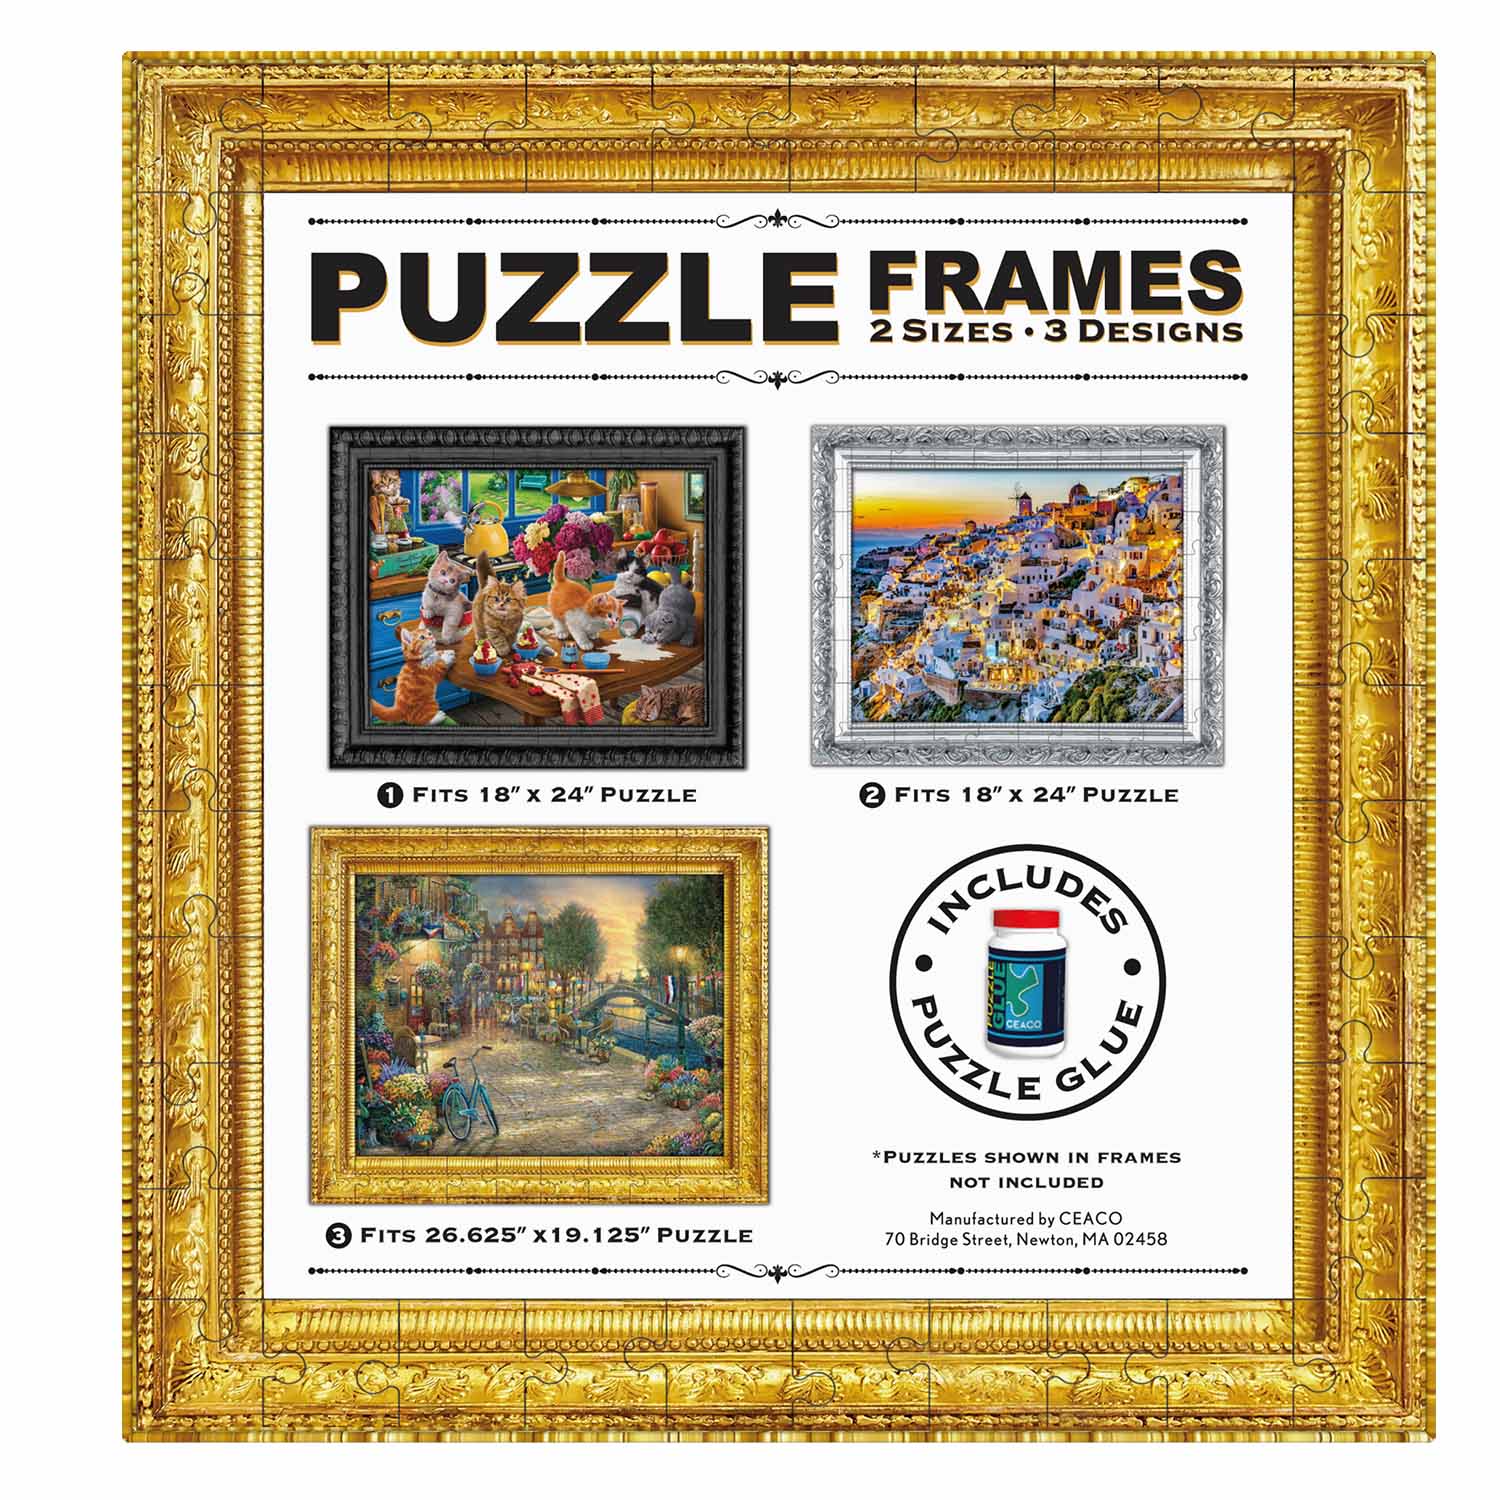 Puzzle Frames